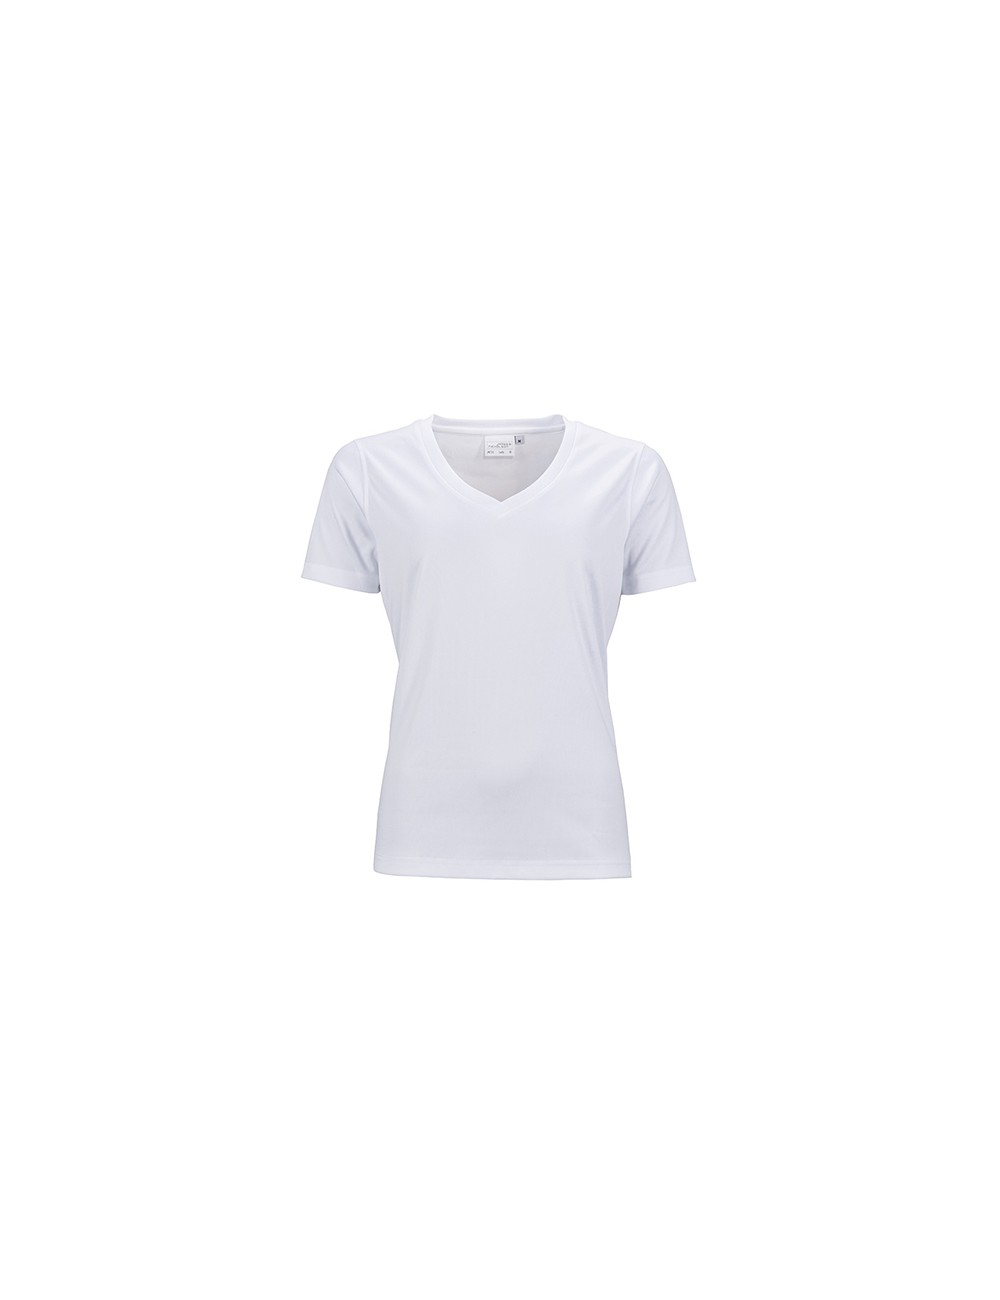 Ladies Active T-Shirt, V-Neck, Farbe White - 1